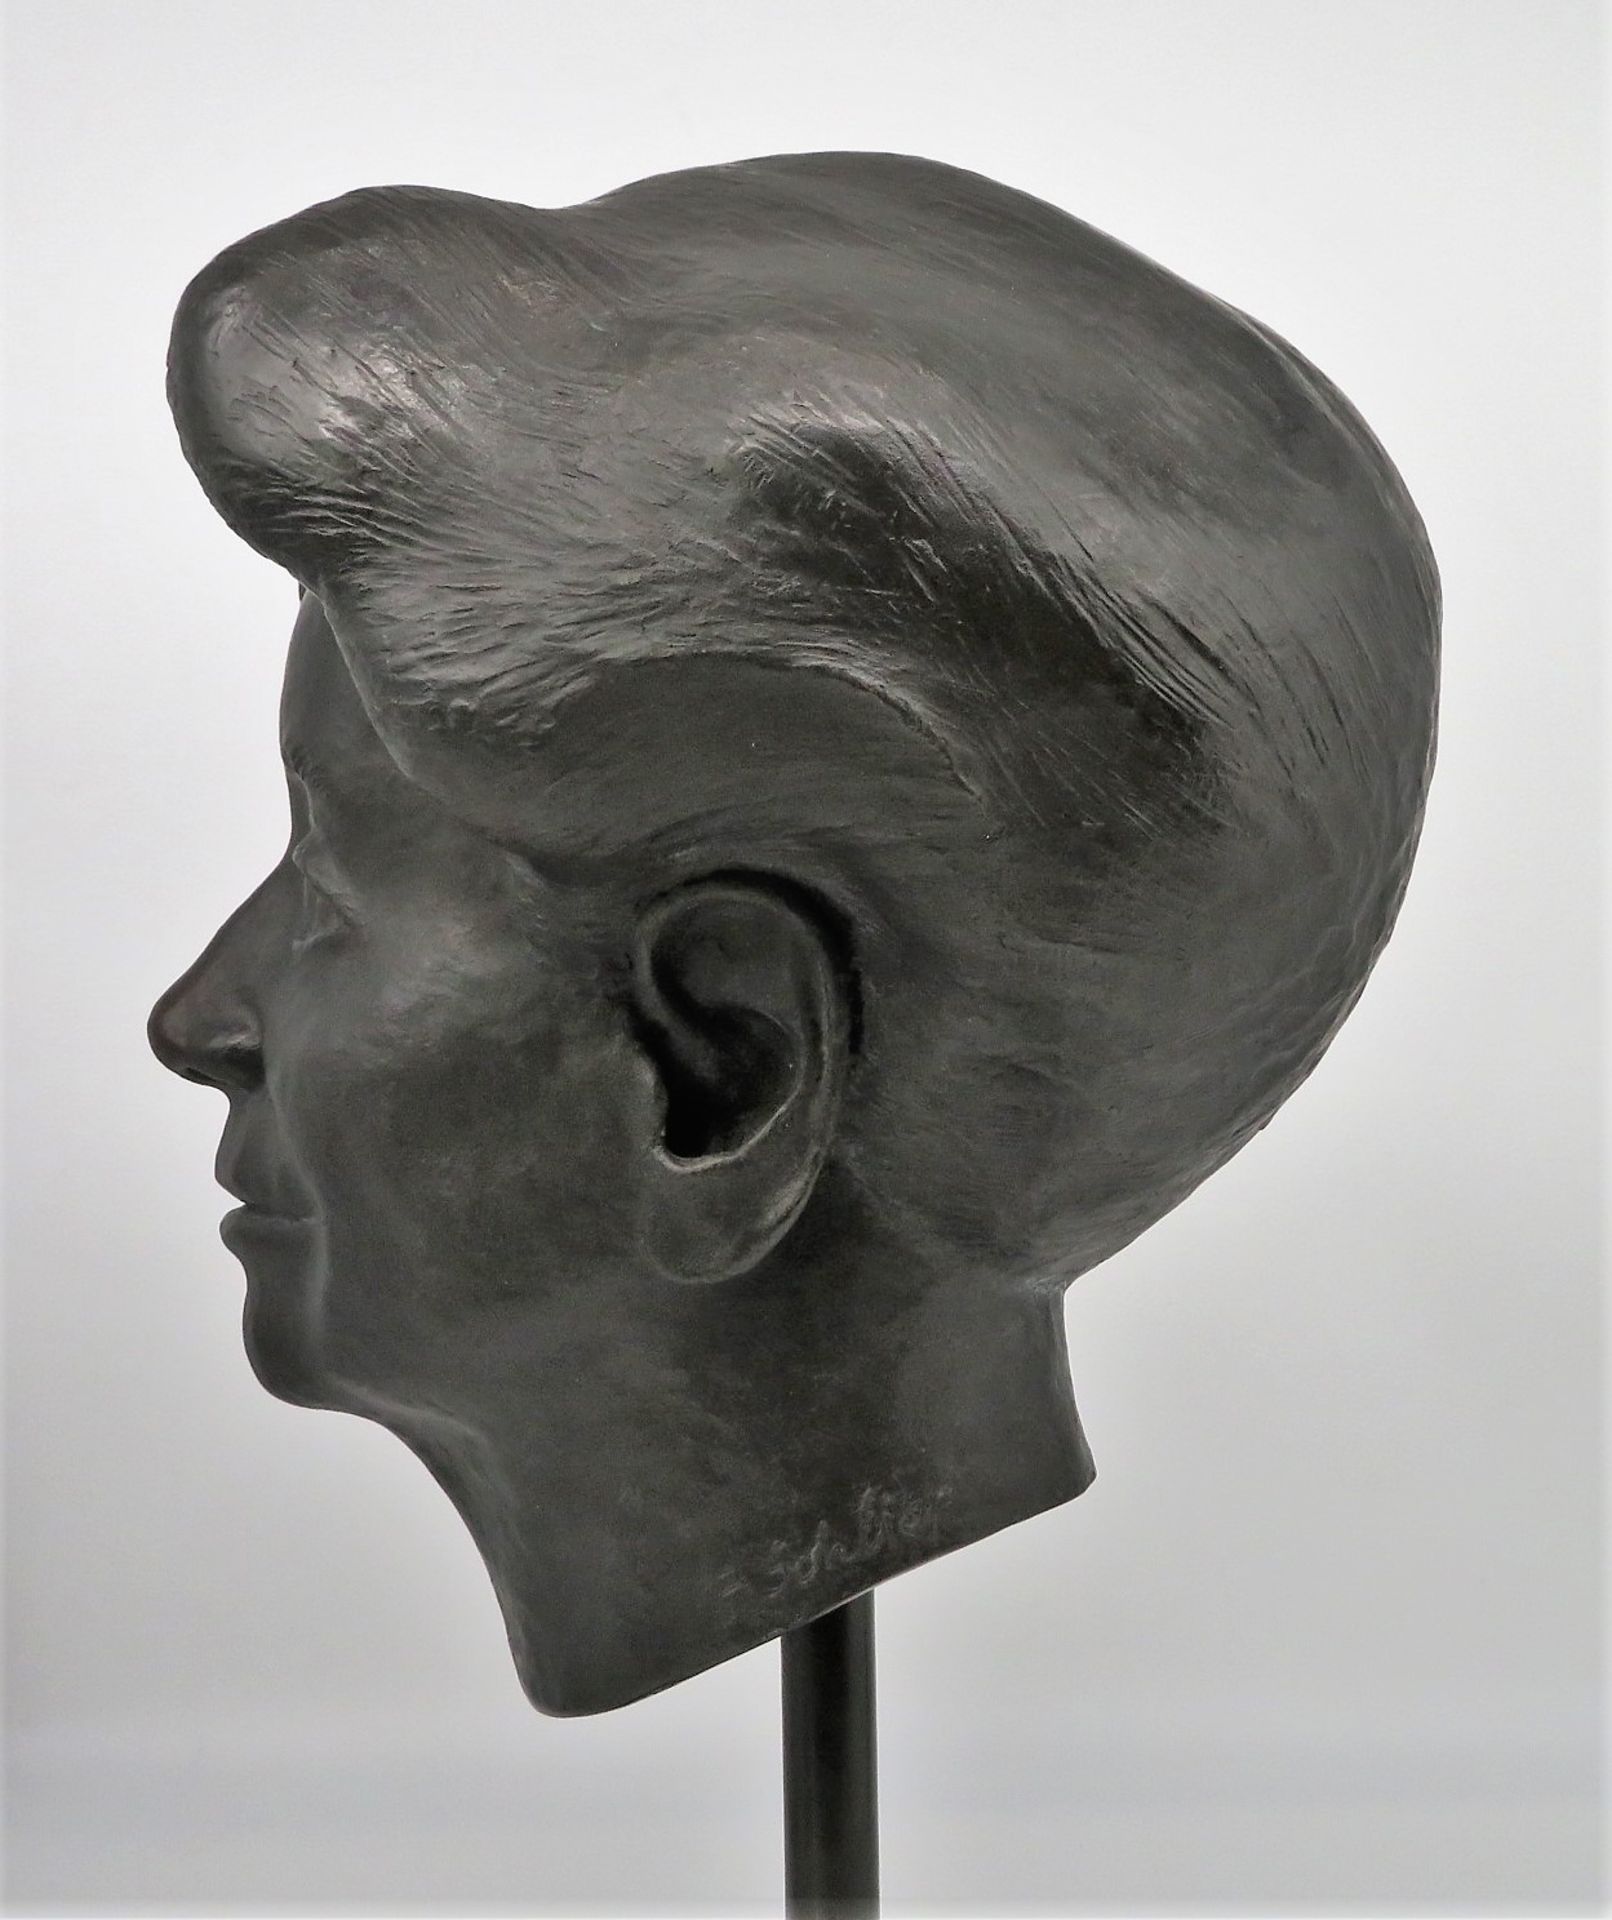 Schliep, Moderner Bildhauer, "Porträtbüste einer Frau", Bronze, sign.u.dat. (19)97, Standfuß Eisen, - Image 2 of 3